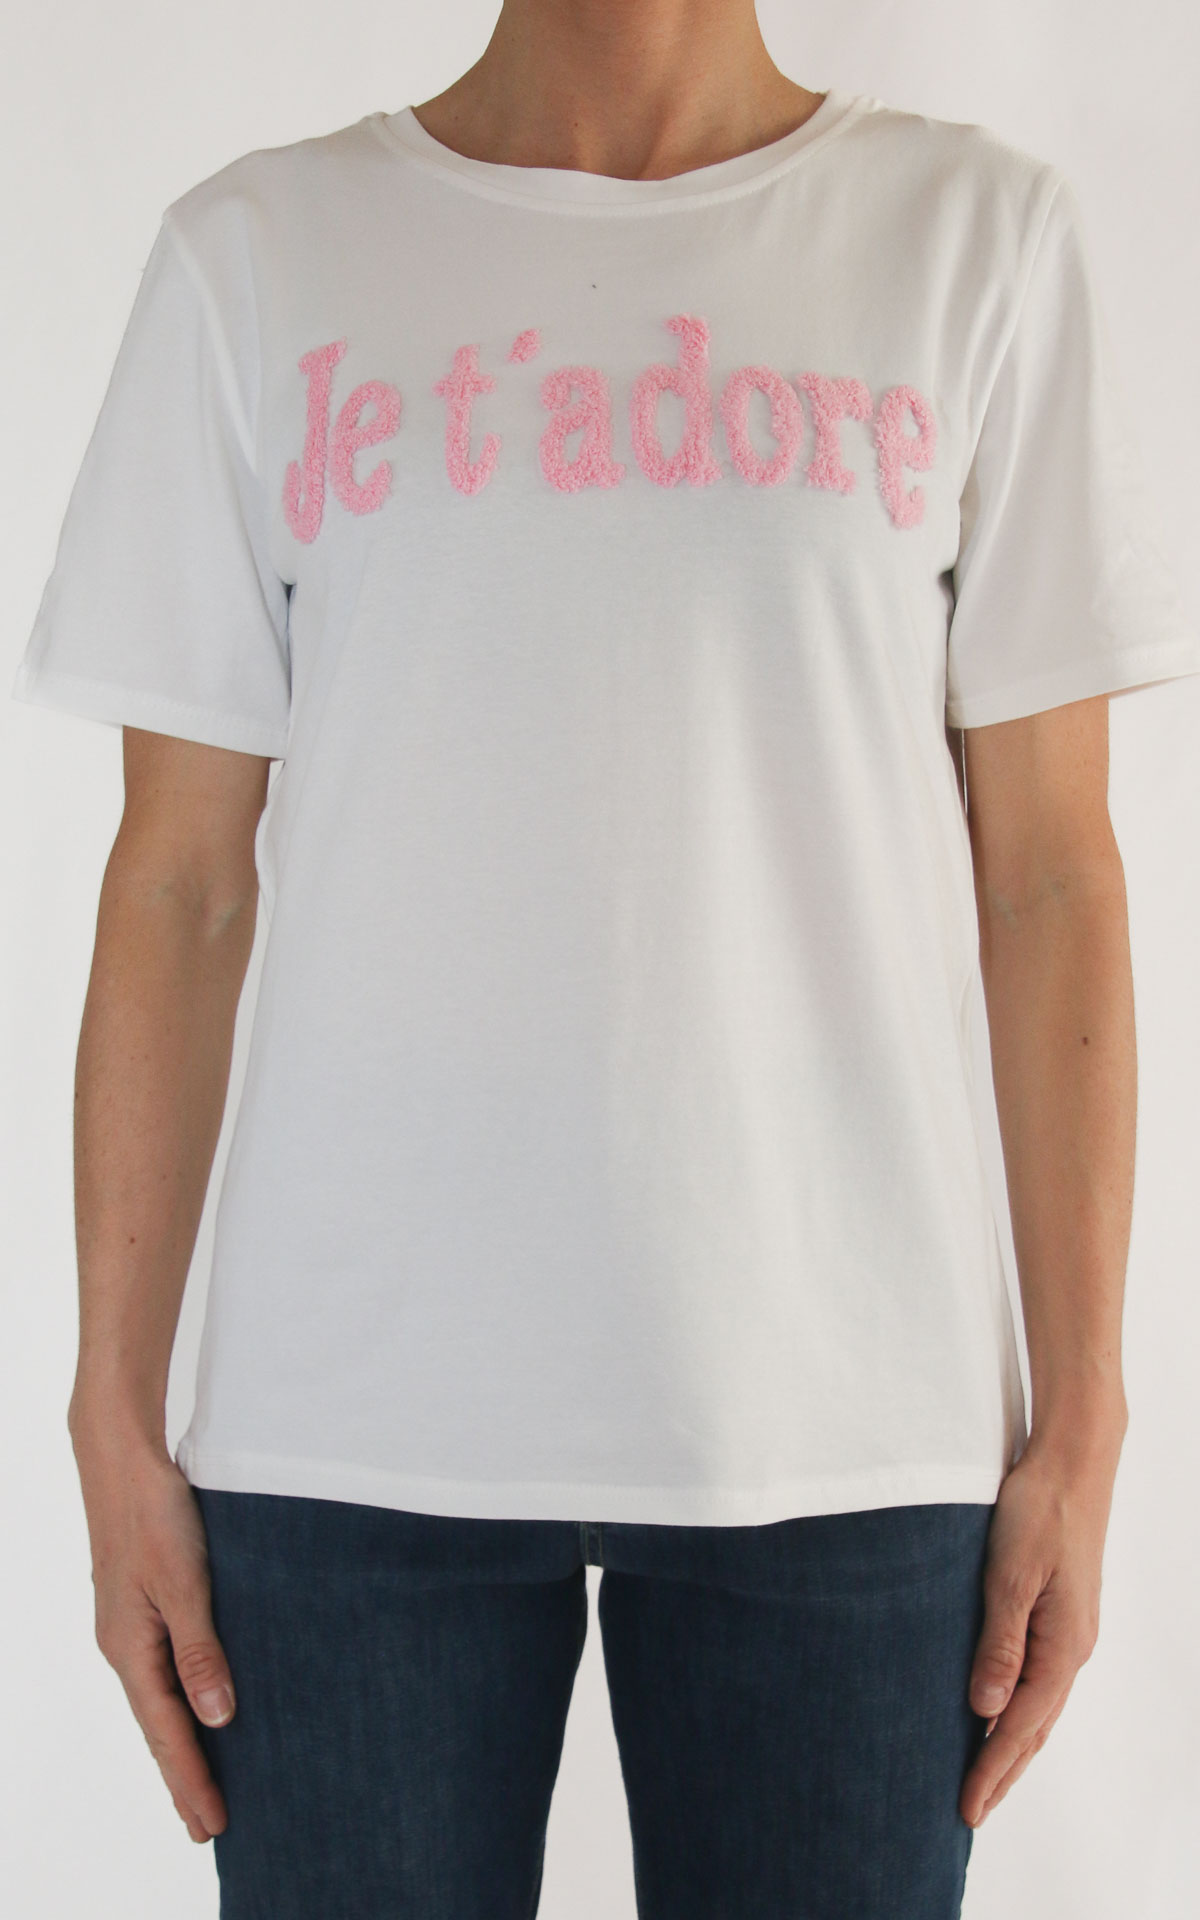 Civico 1 - T-shirt decoro - Je t'adore rosa